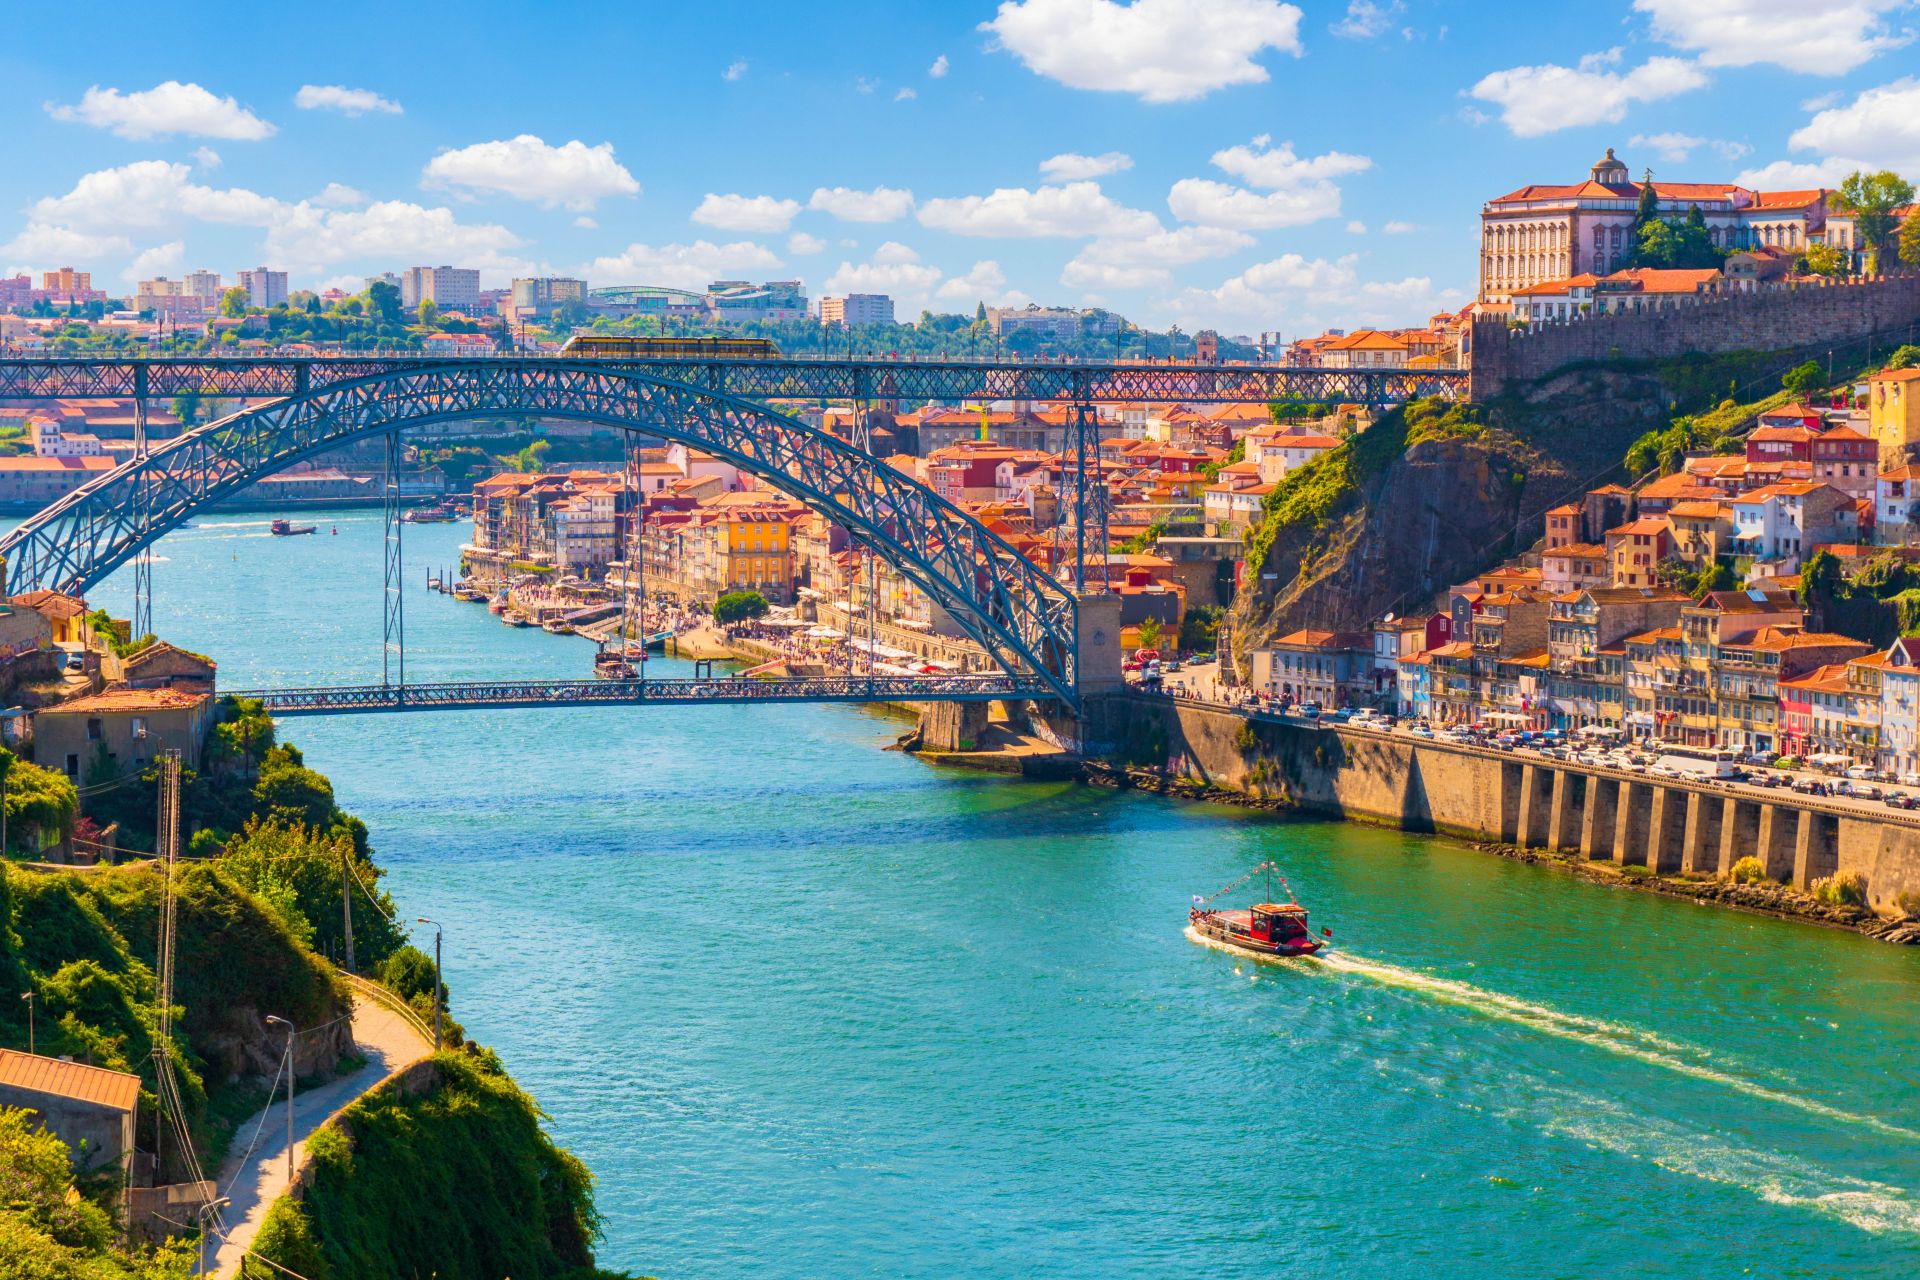 Vista del casco antiguo de Porto, Portugal con el puente Ponte Dom Luis sobre el río Douro.